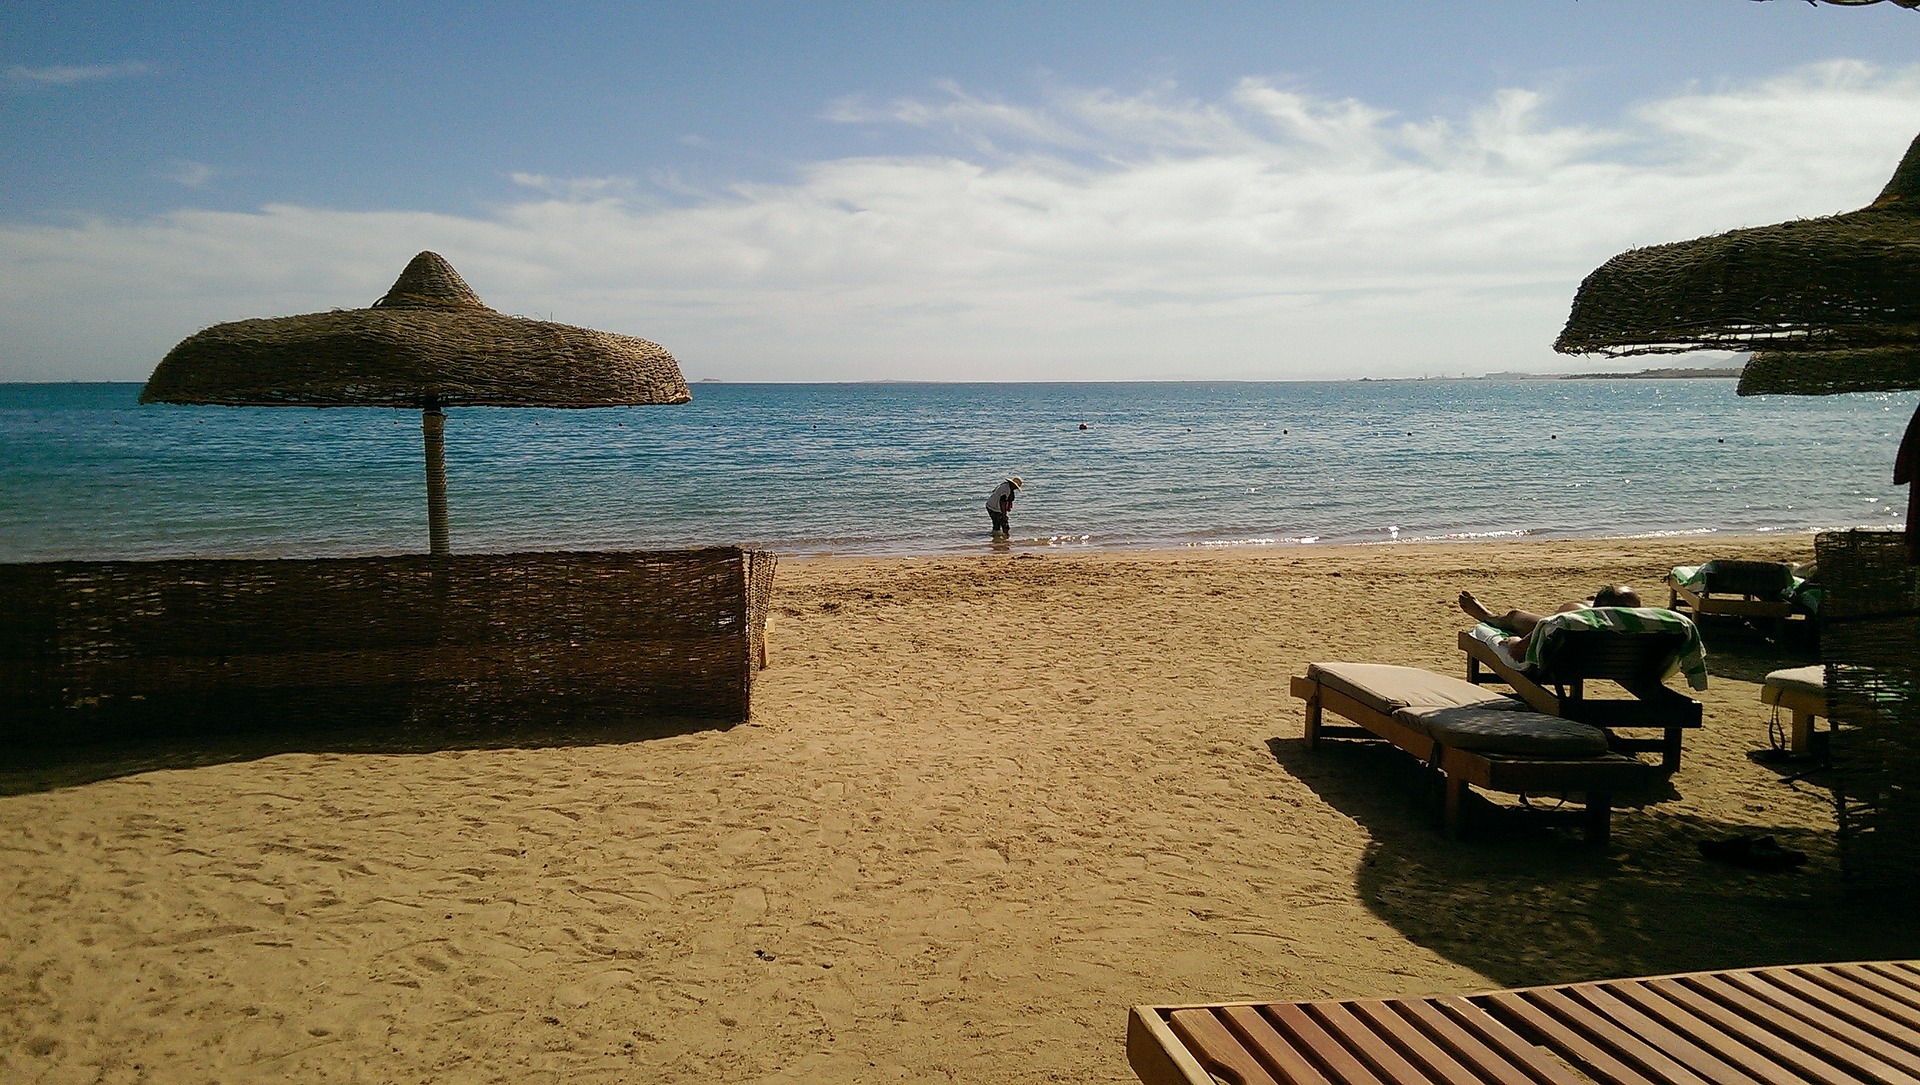 Hoteleigener Strand Urlaub im Grand Resort Hurghada eine Woche günstig ab 285,00€